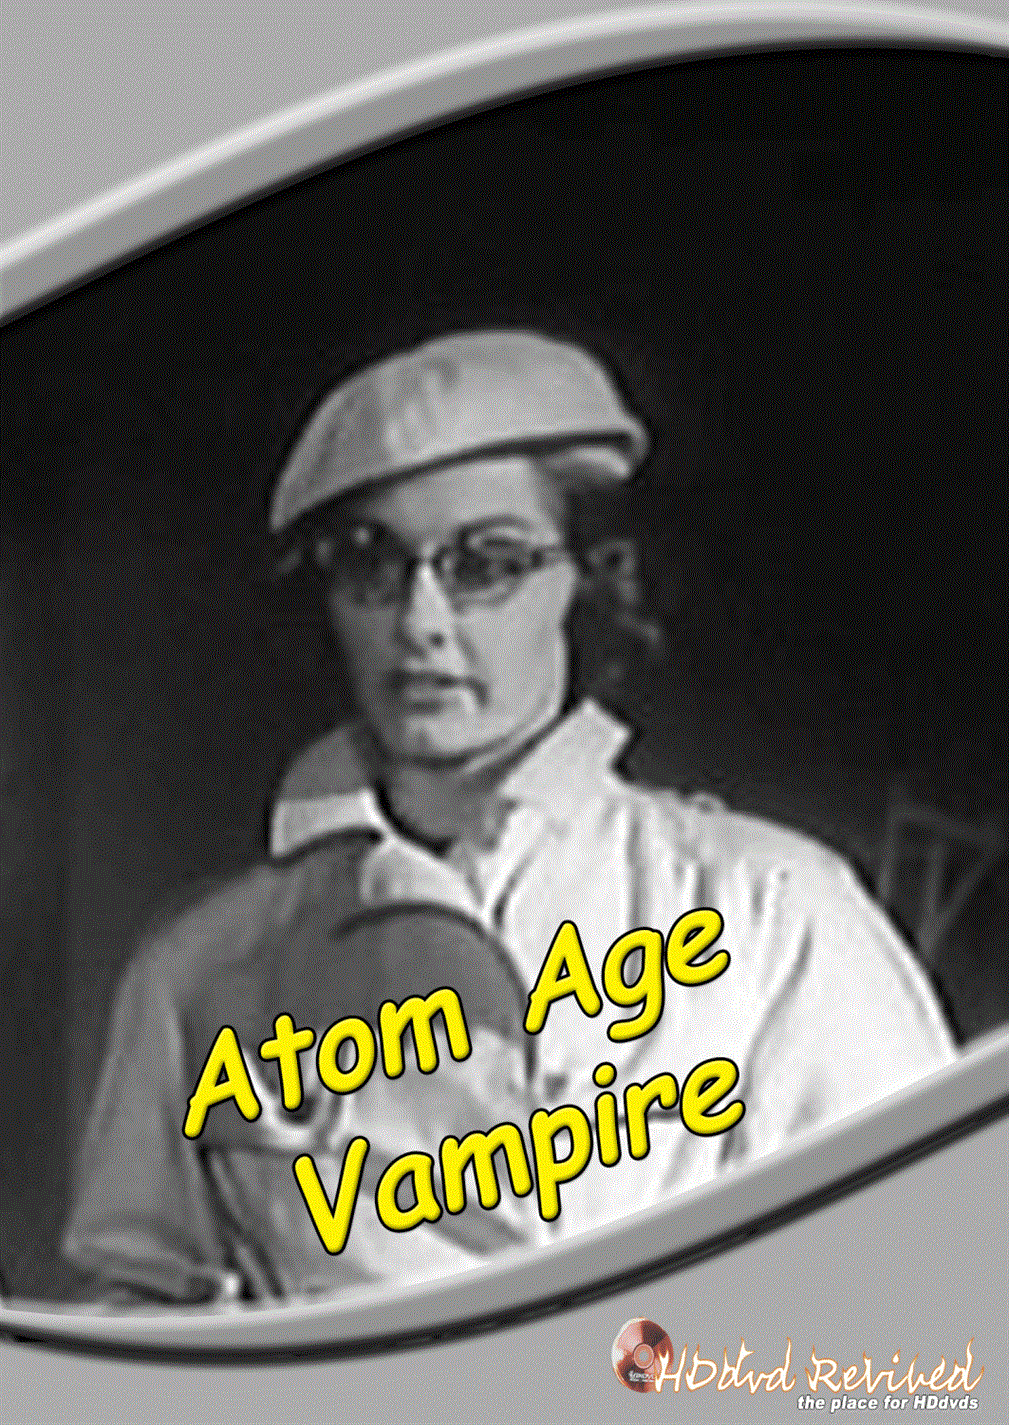 Atom Age Vampire (1960) Standard DVD (HDDVD-Revived) UK Seller